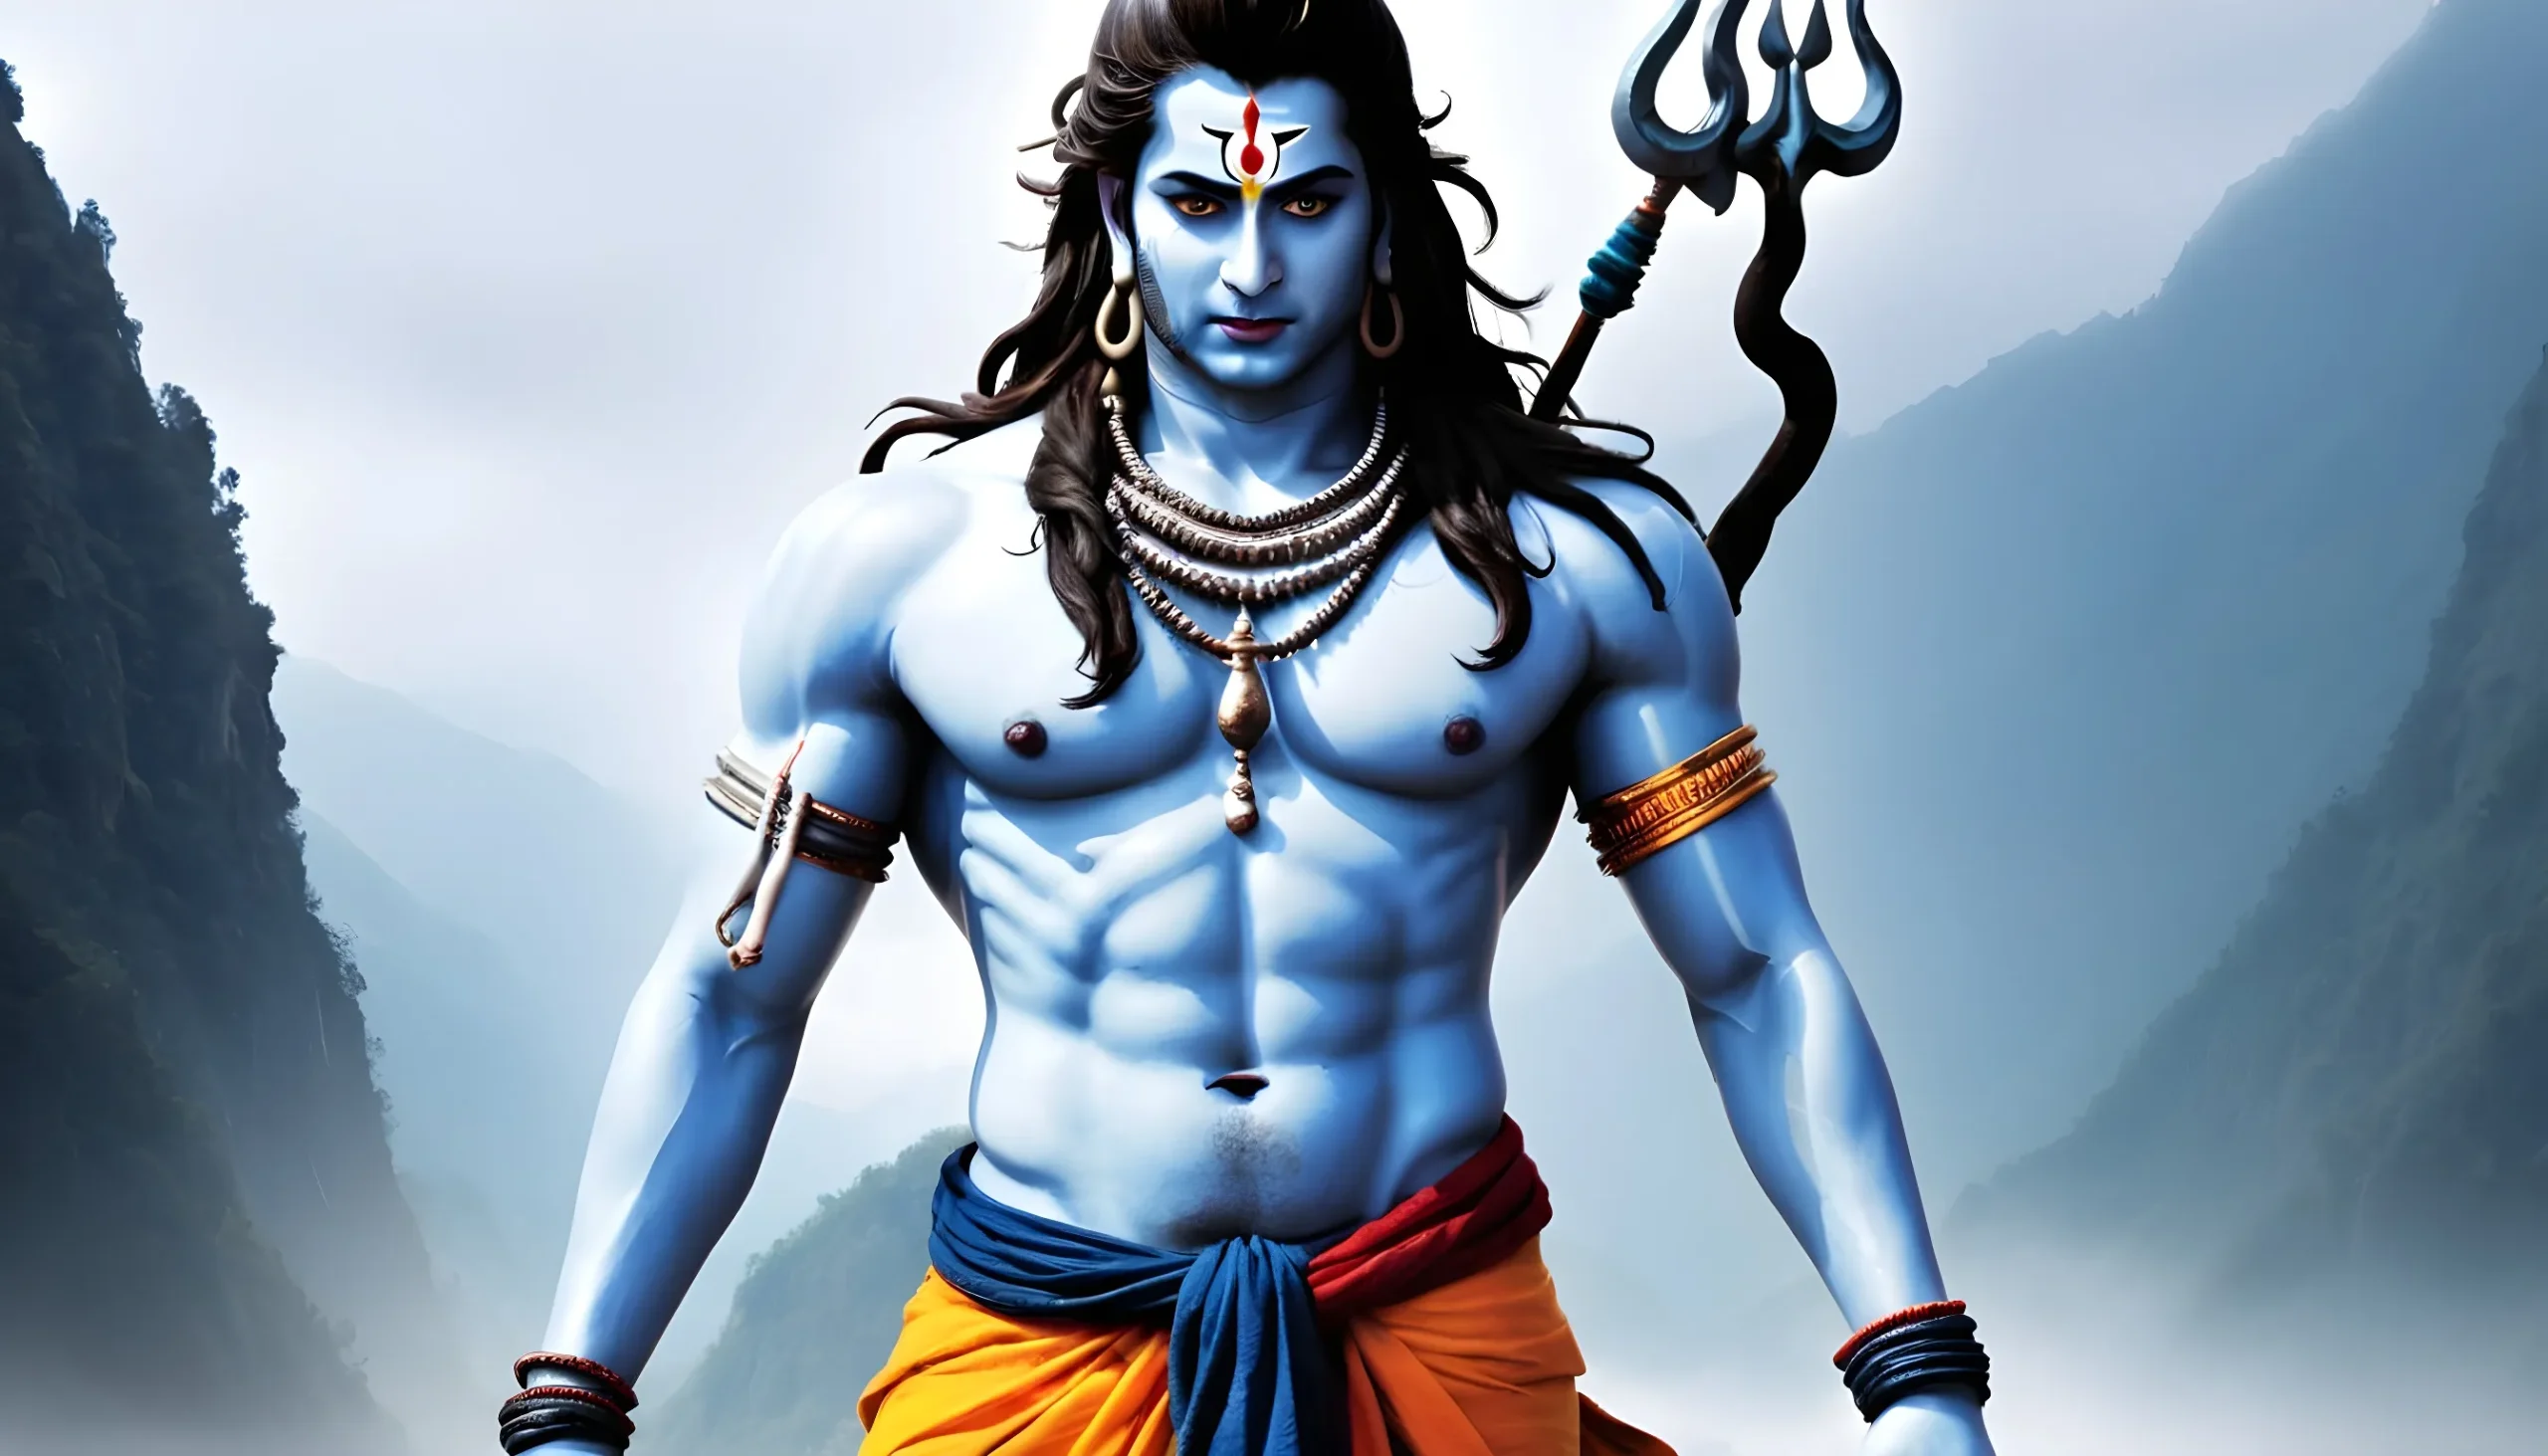 নতুন শিব ঠাকুরের ছবি - lord shiva picture 13